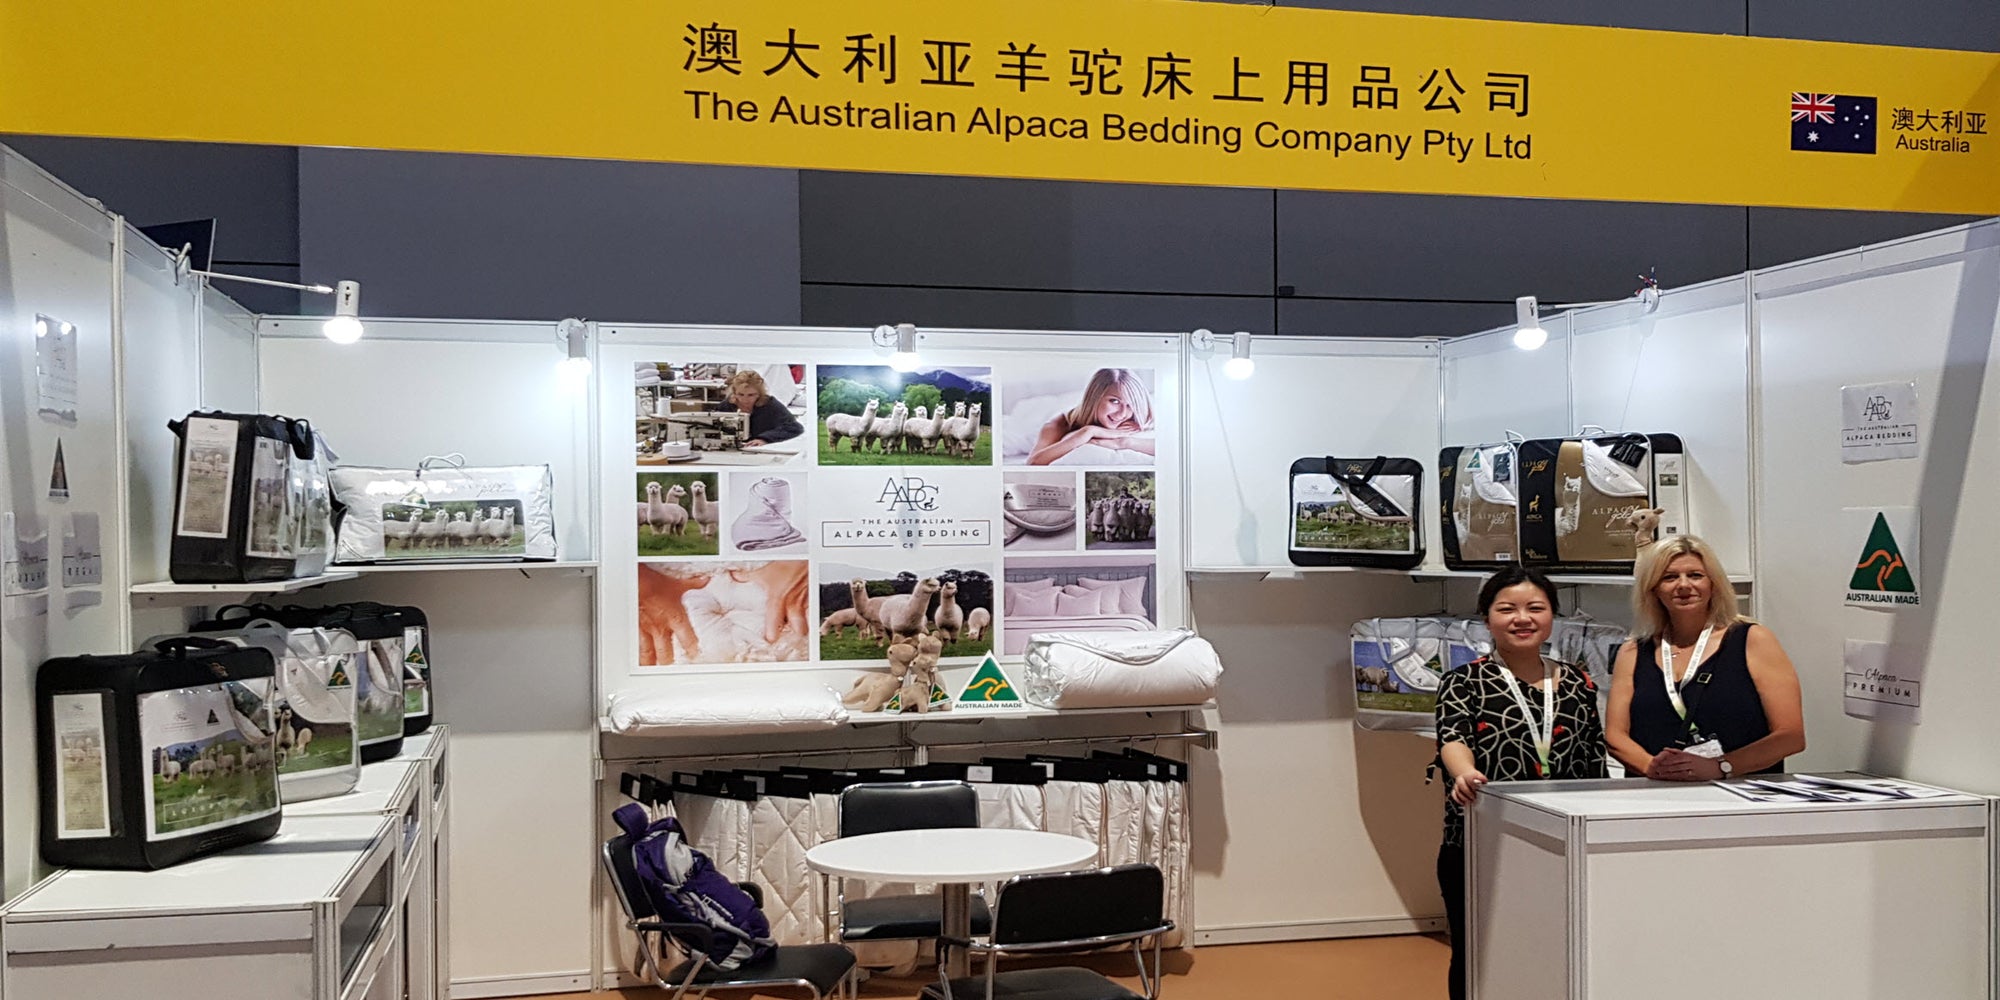 Australain Alpaca Bedding Company in Shanghai Fair